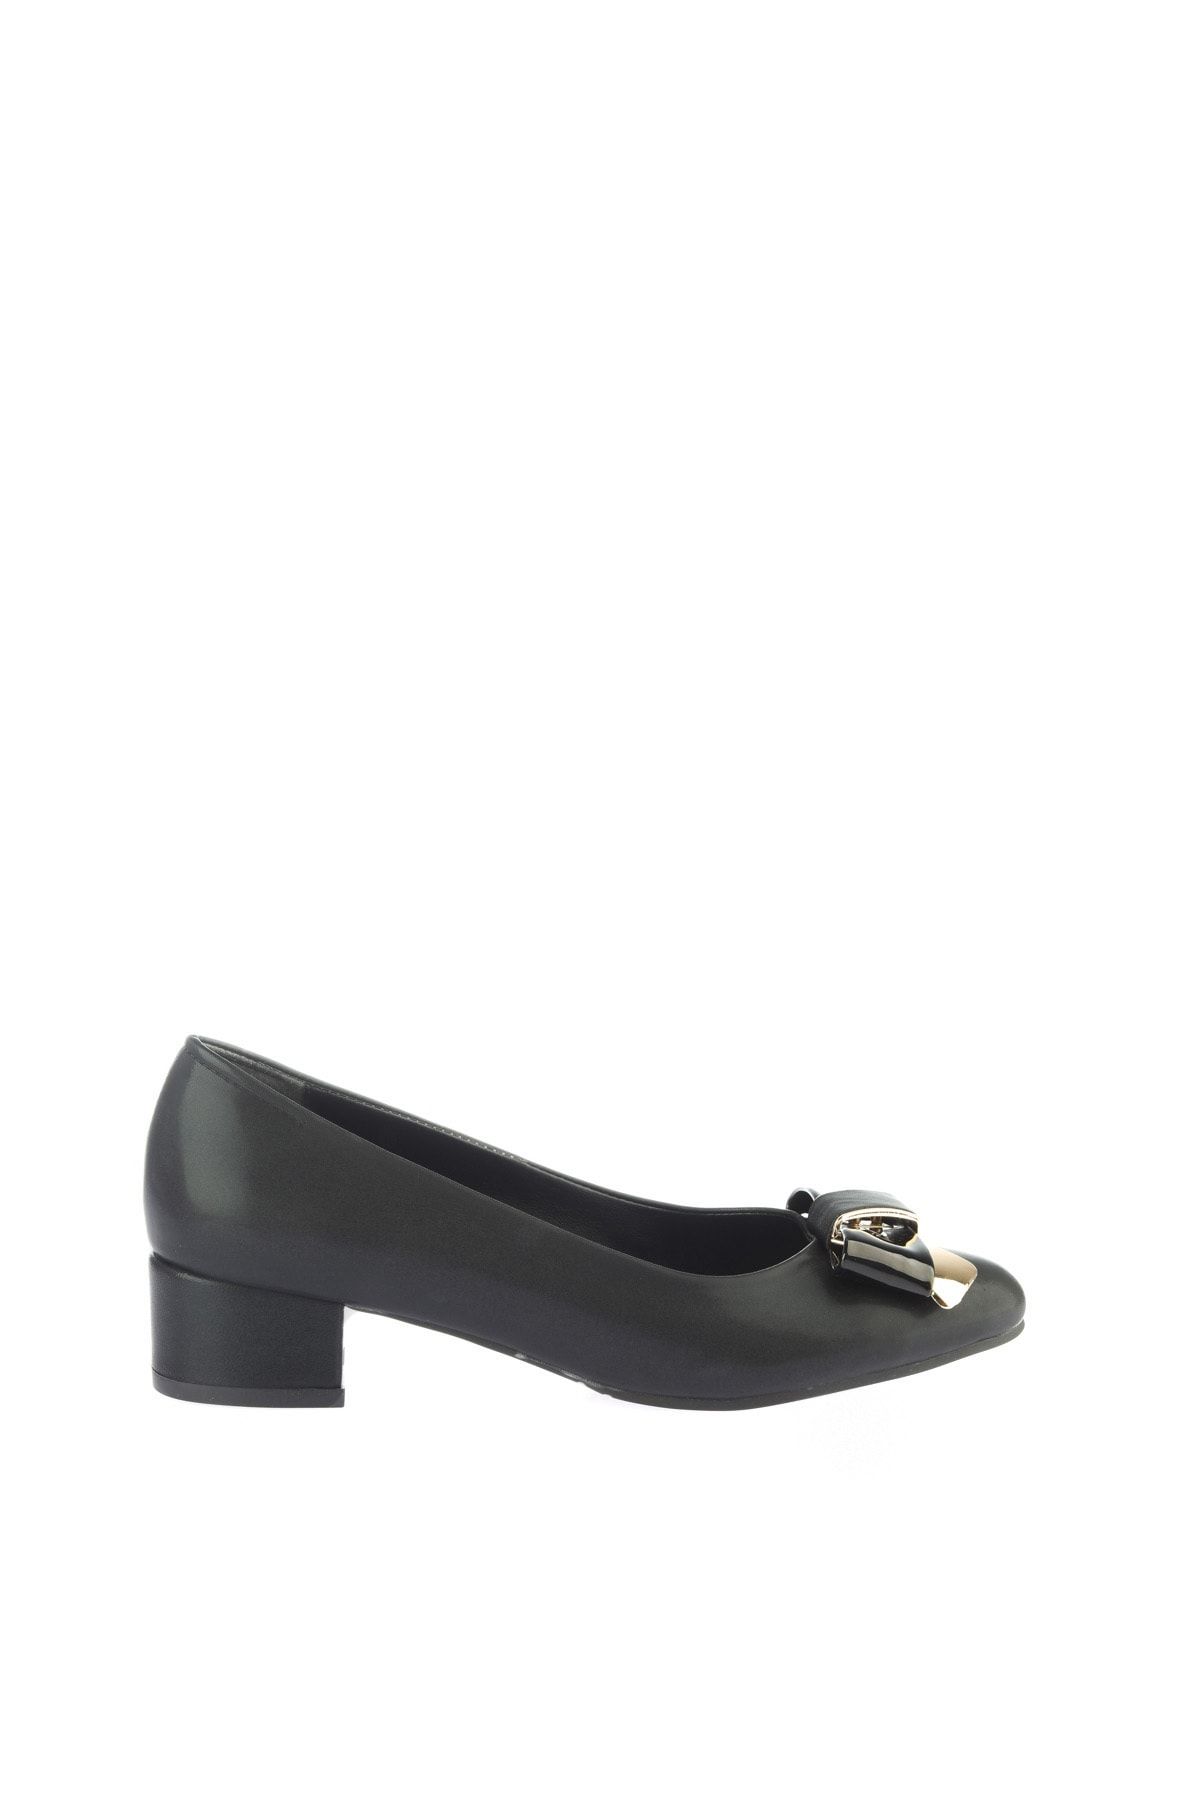 Yaya by Hotiç Siyah Kadın Klasik Topuklu Ayakkabı